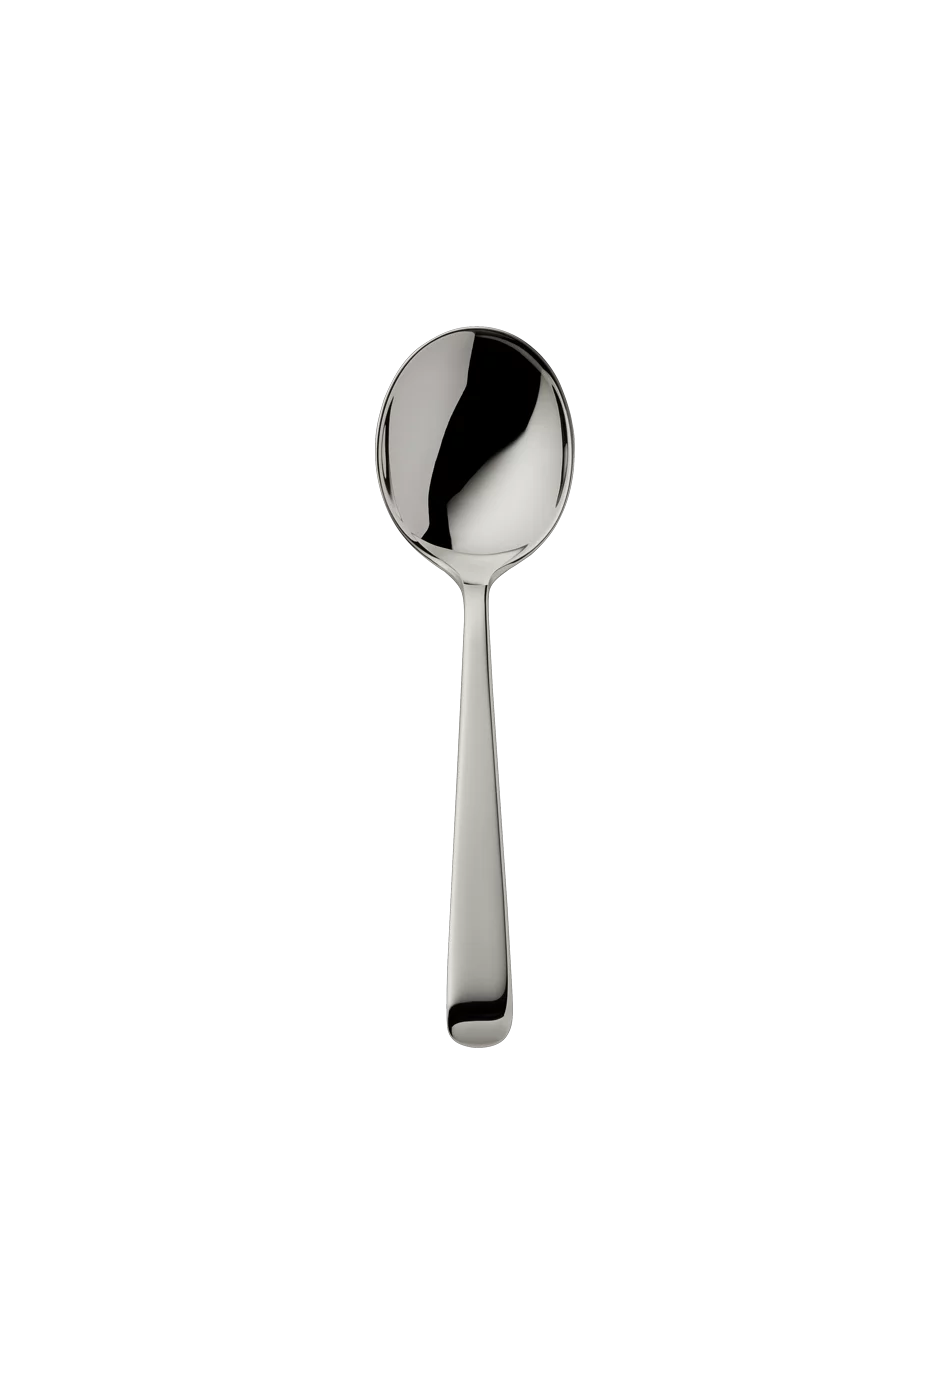 Alta Cream Spoon (Broth Spoon) (150g massive silverplated)